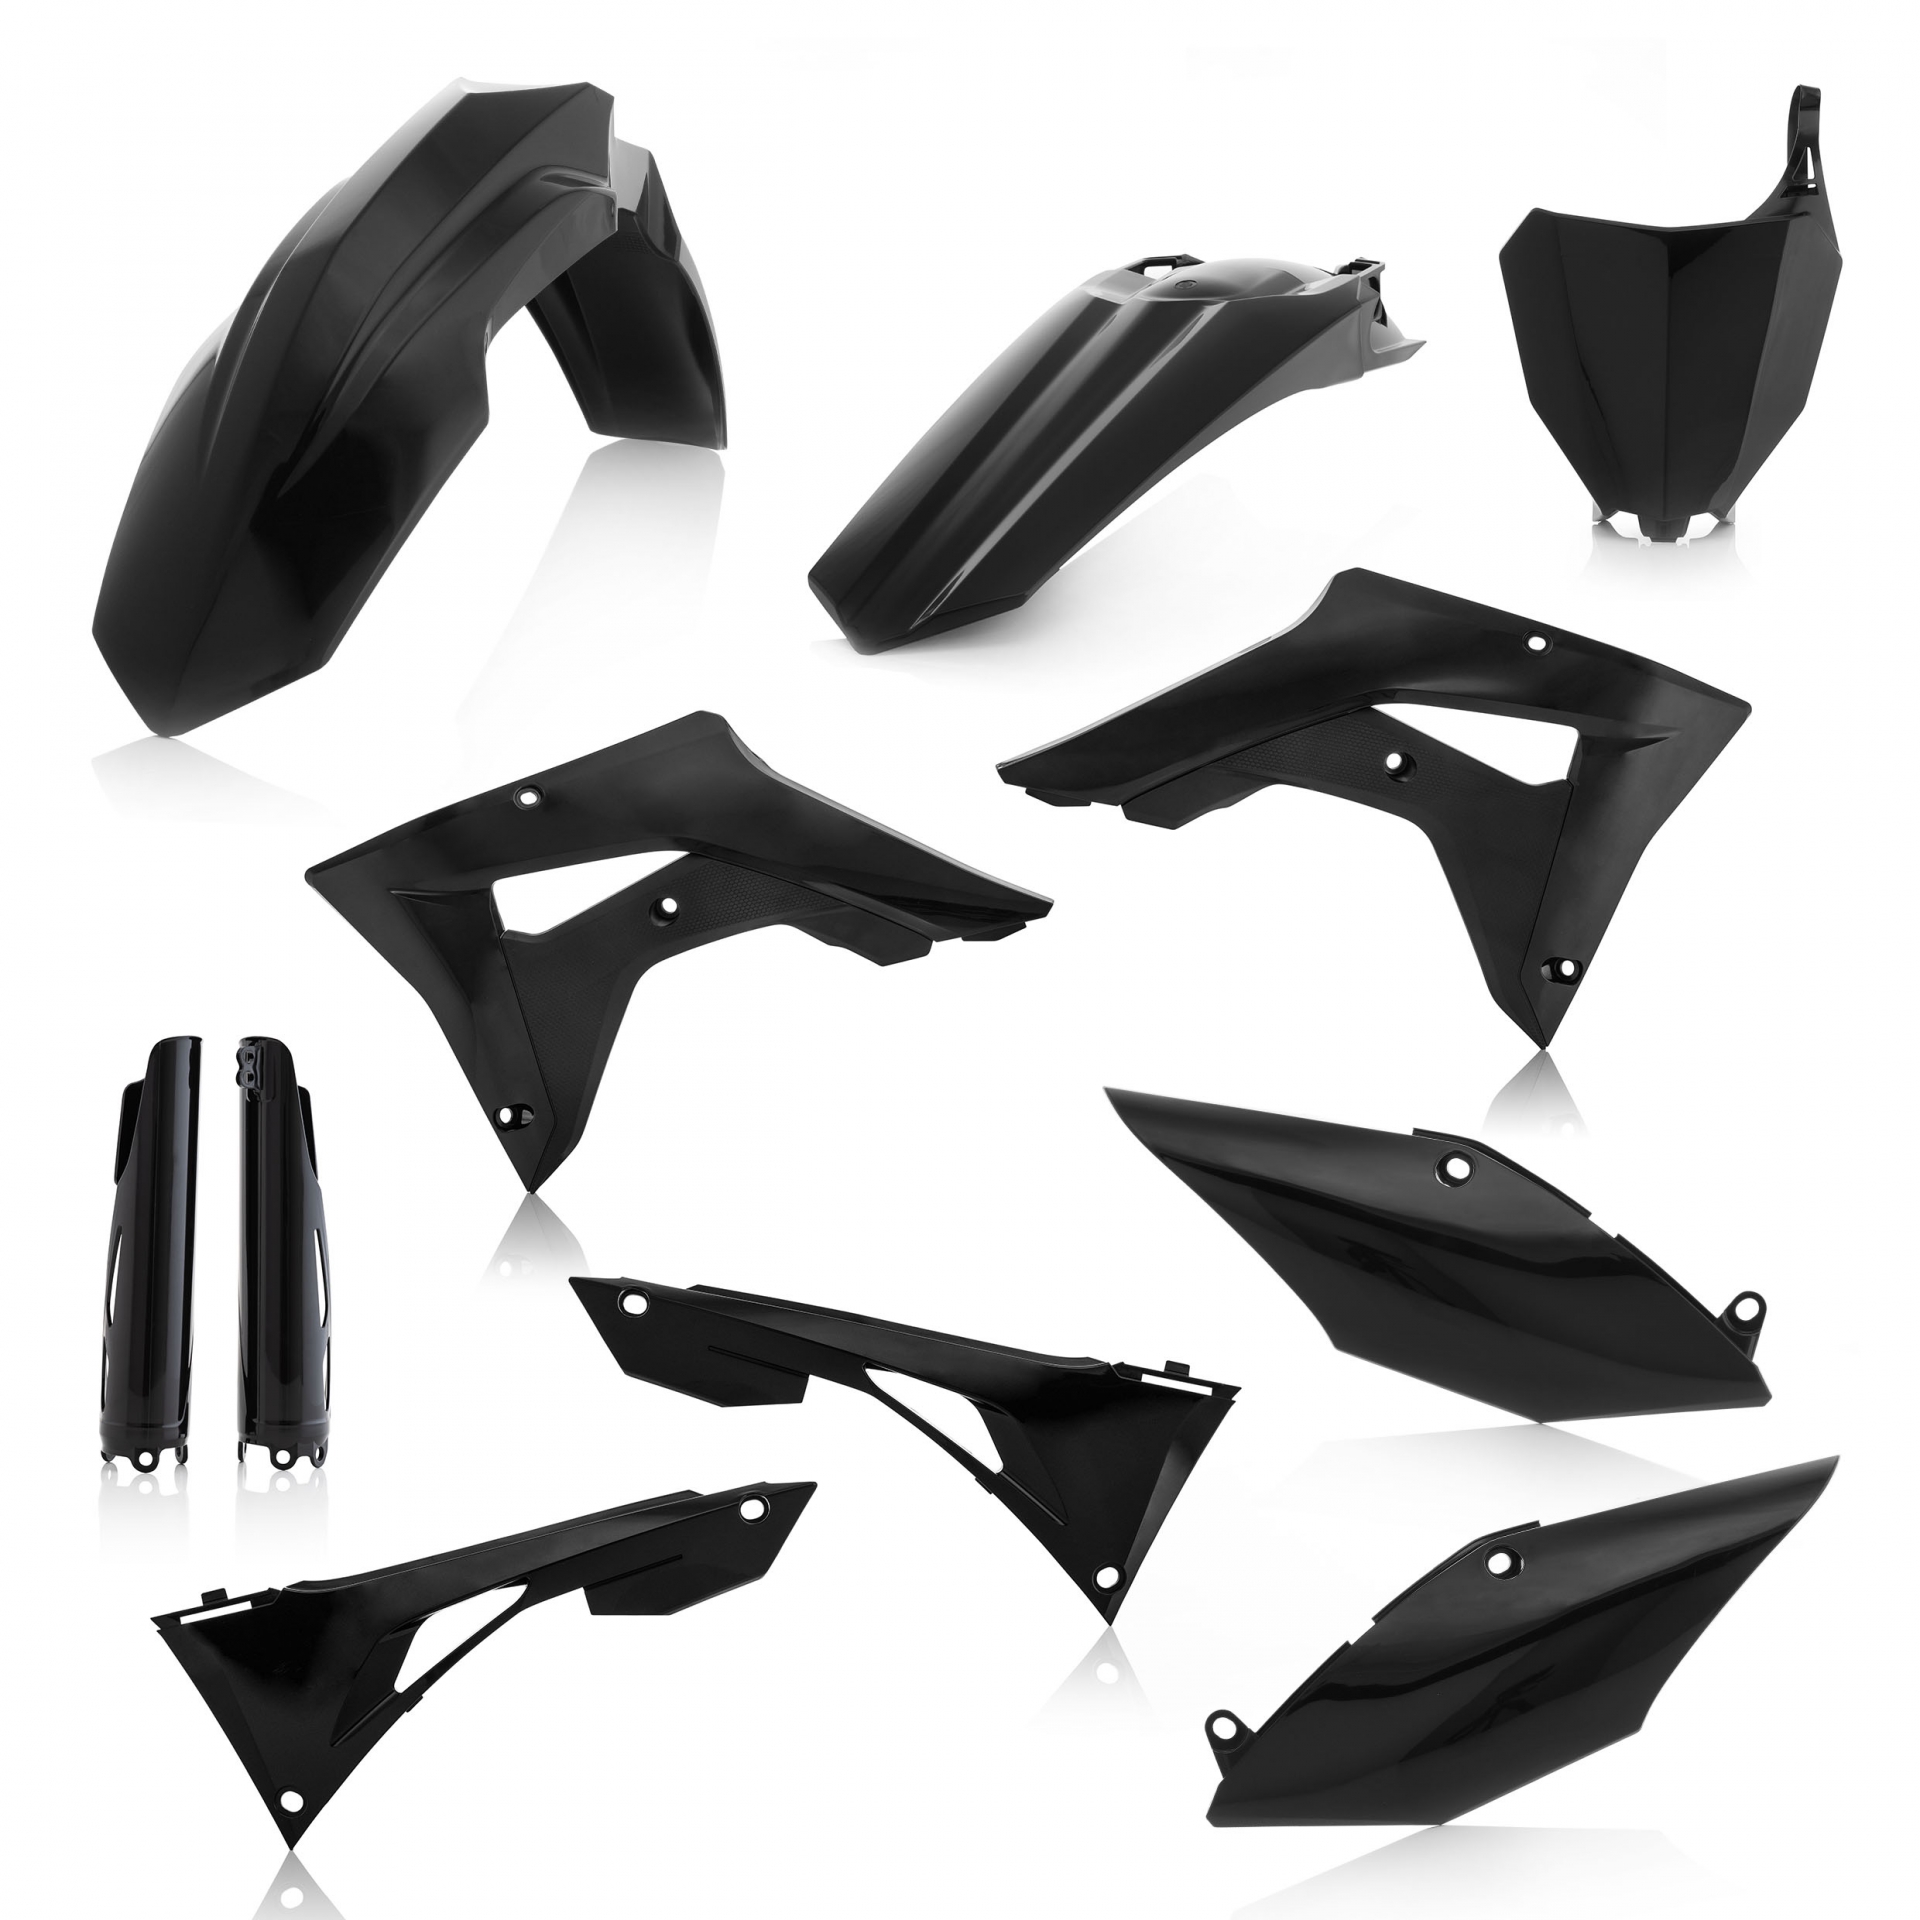 Plastikteile für deine Honda CRF / CR 250/450 in schwarz bestehend aus Kotflügel vorn Kotflügel hinten Kühlerspoiler Seitenteile Gabelschützer Startnummerntafel